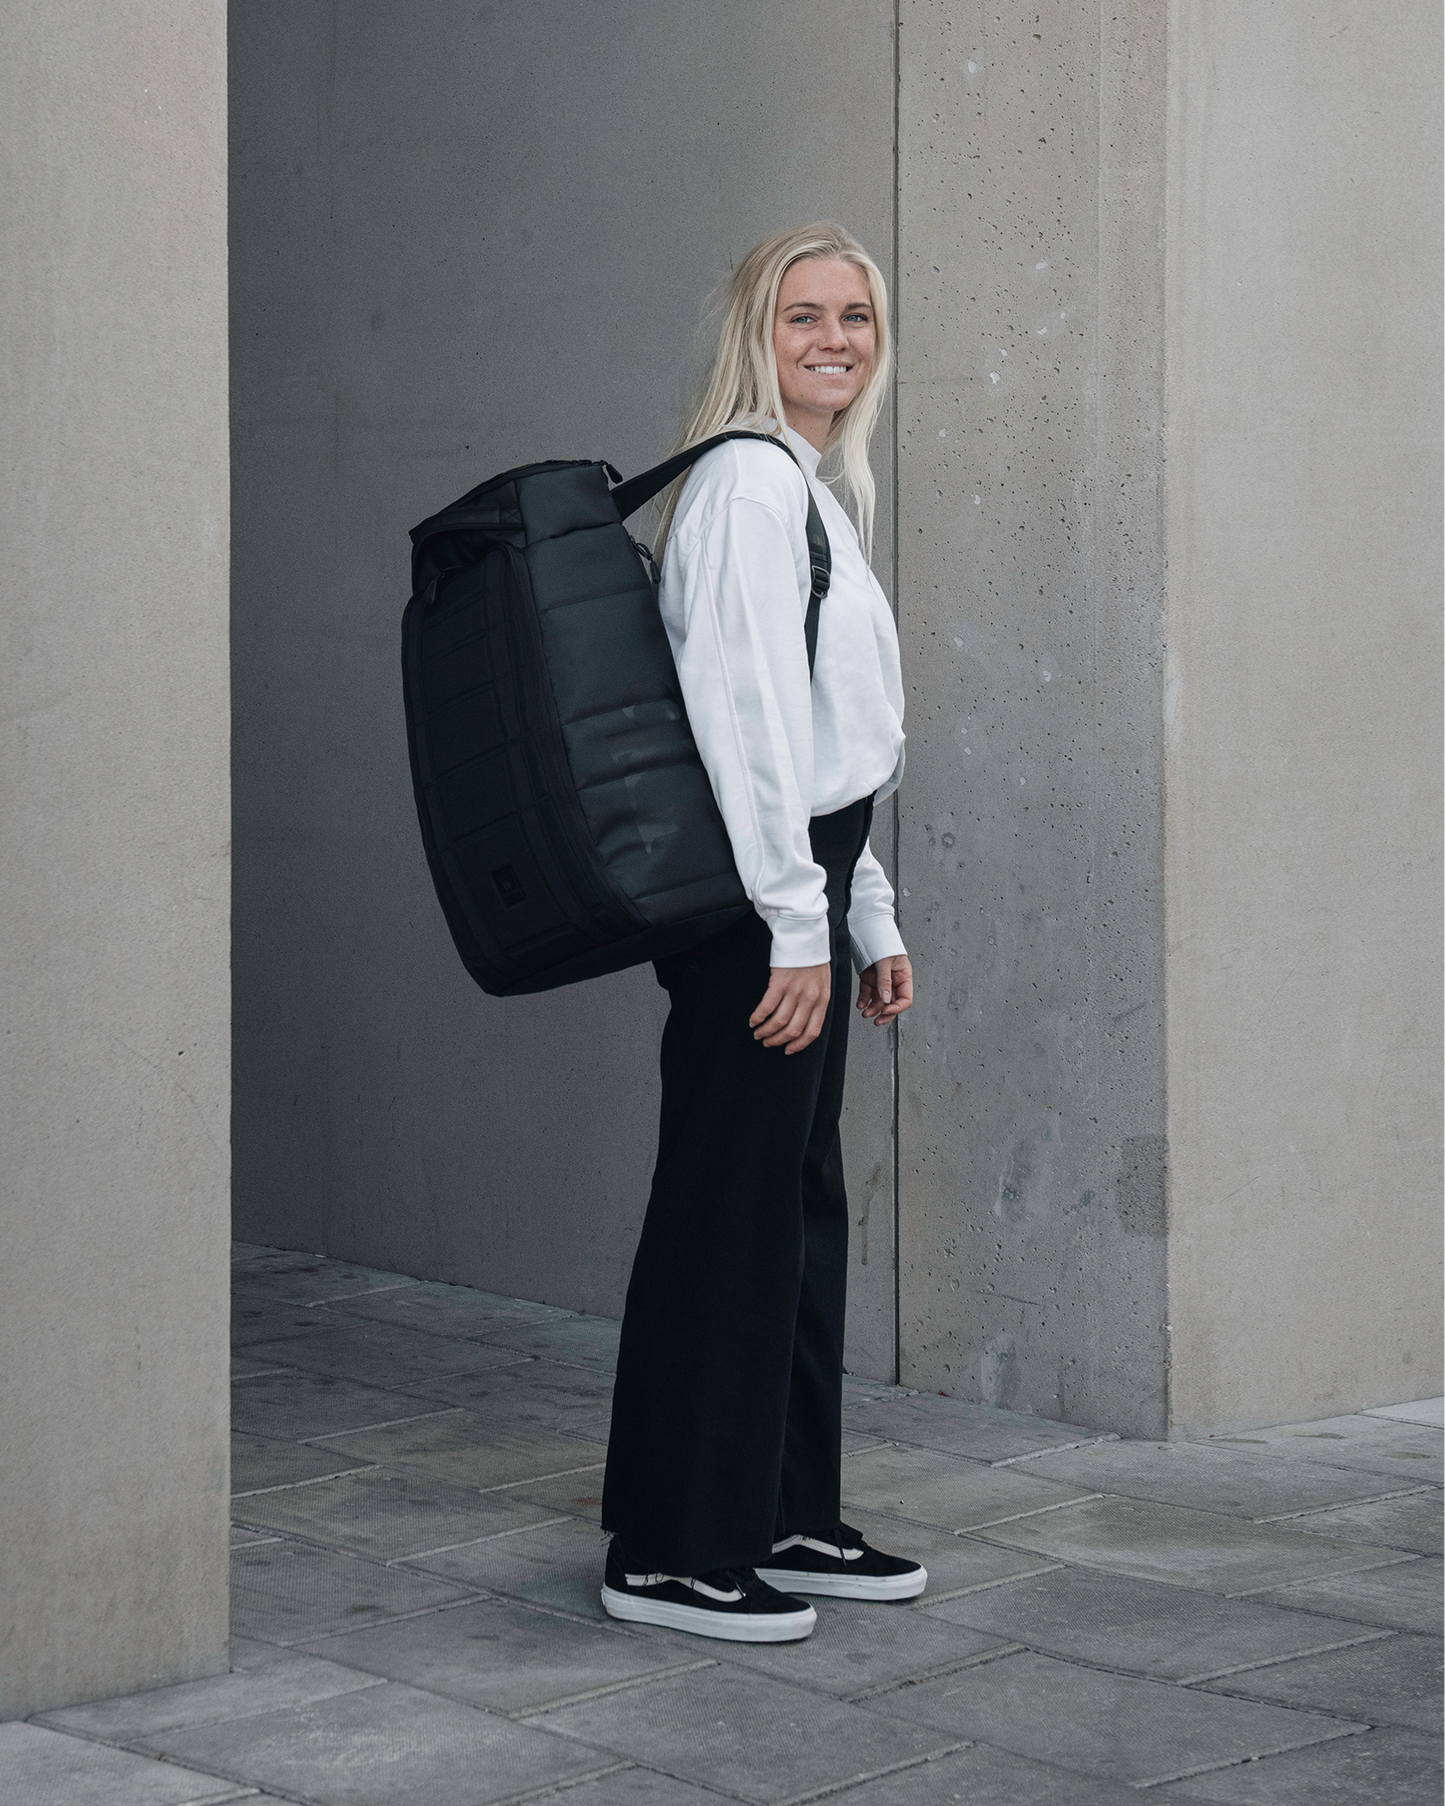 The Strøm 30L Backpack Camo 3.0